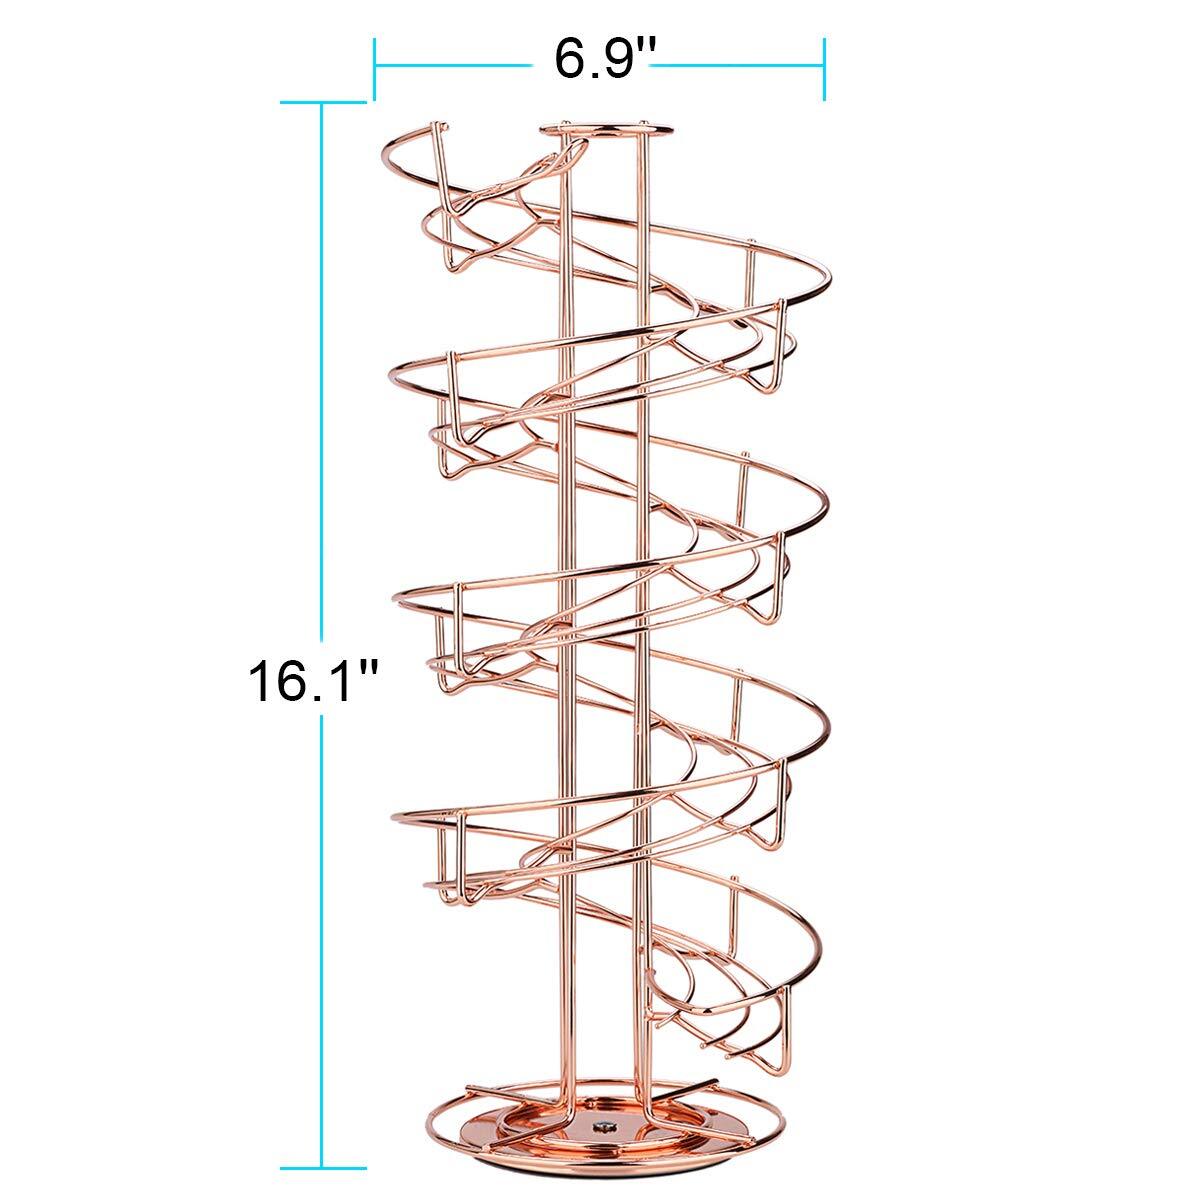 Spiral Design Metal Egg Skelter Dispenser Rack